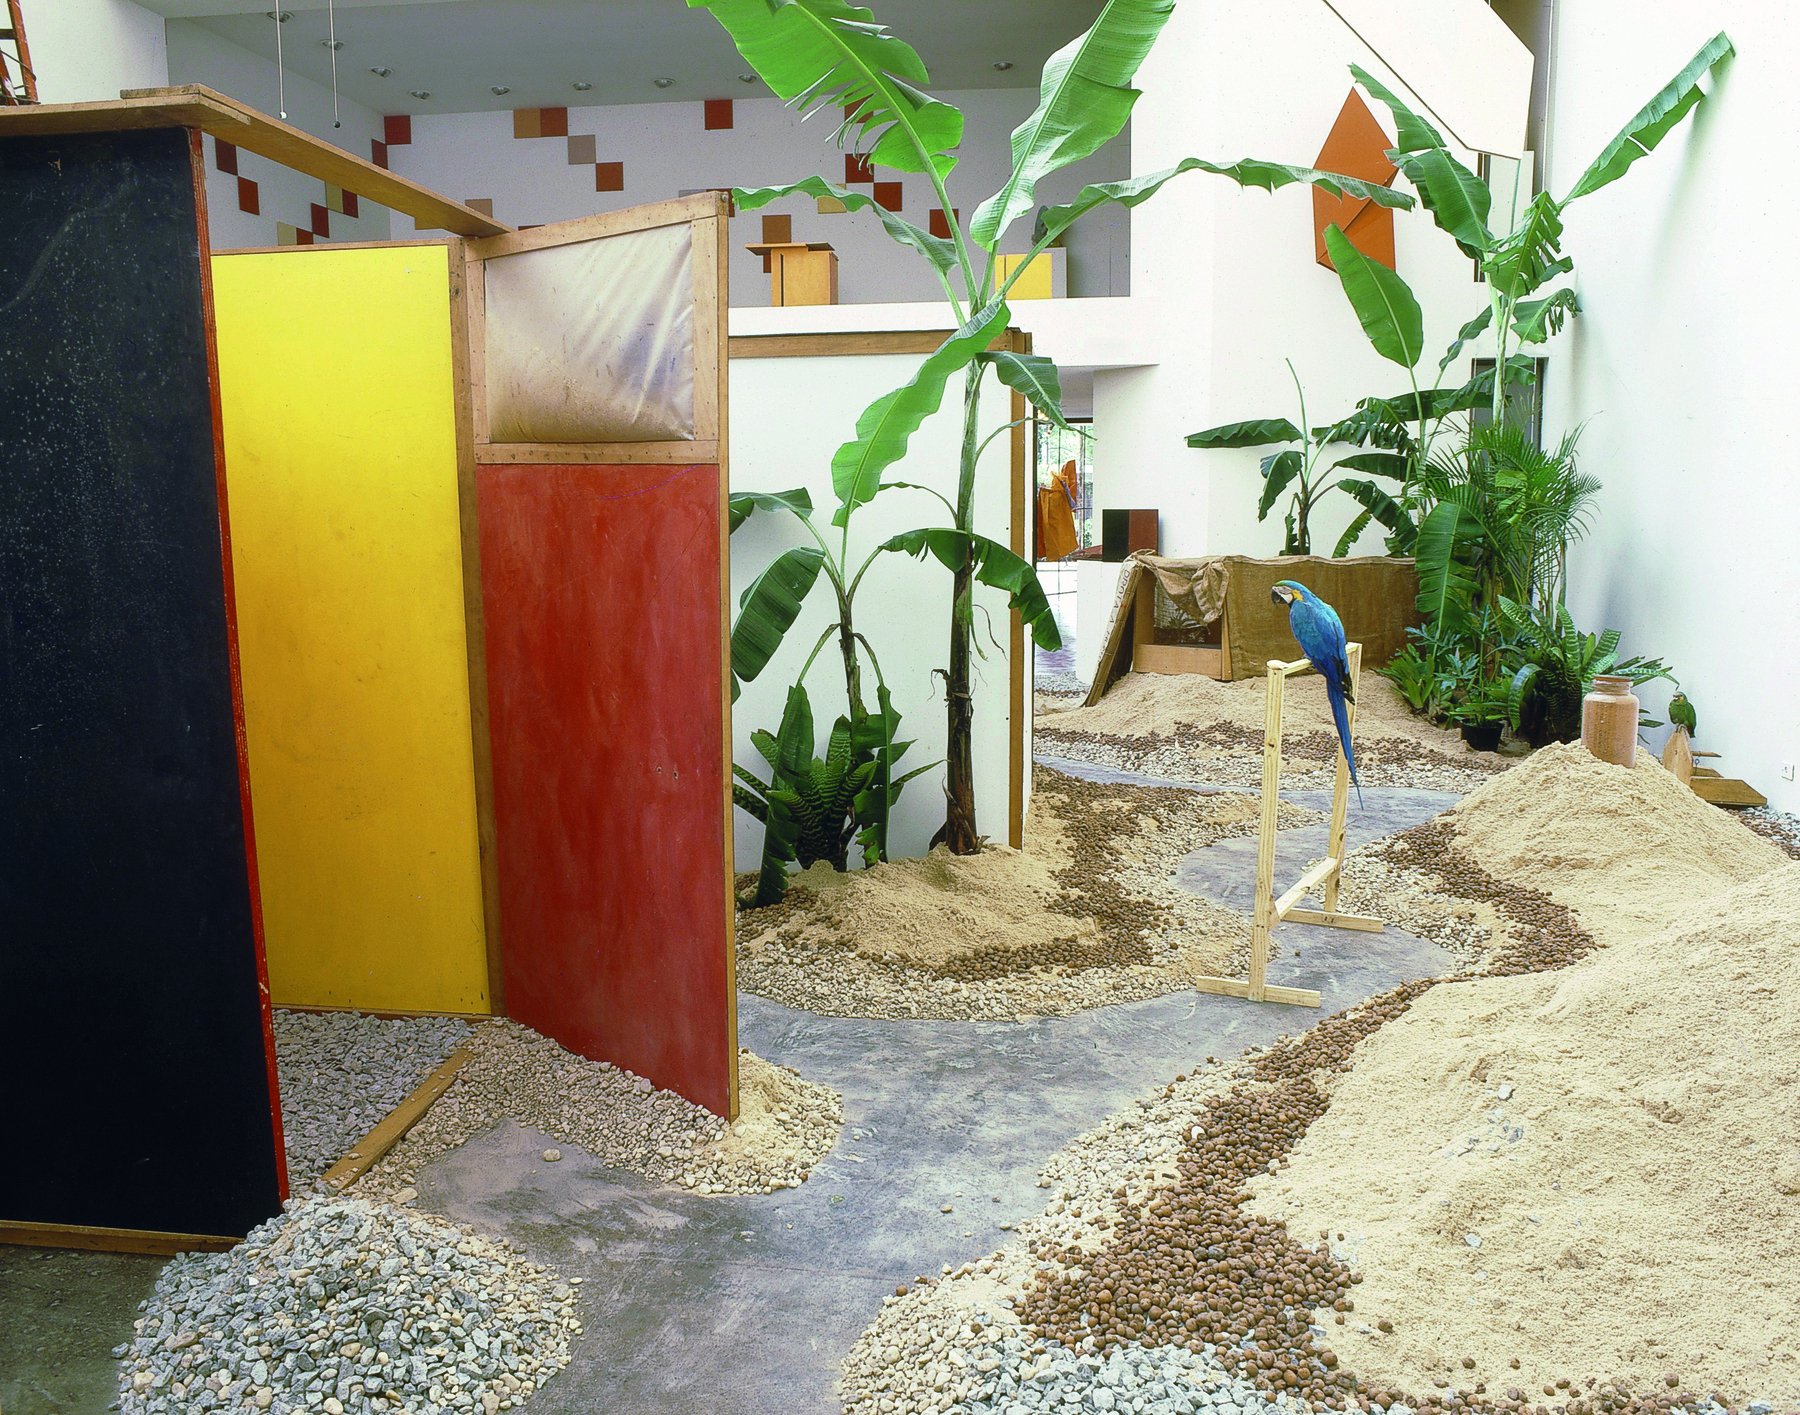 Fotografia. Instalação que apresenta um espaço com areia e pequenos amontoados de pedras no chão, além de tapumes de madeira, que separam o espaço em pequenos ambientes. Há plantas diversas e, em um poleiro, uma arara-canindé.